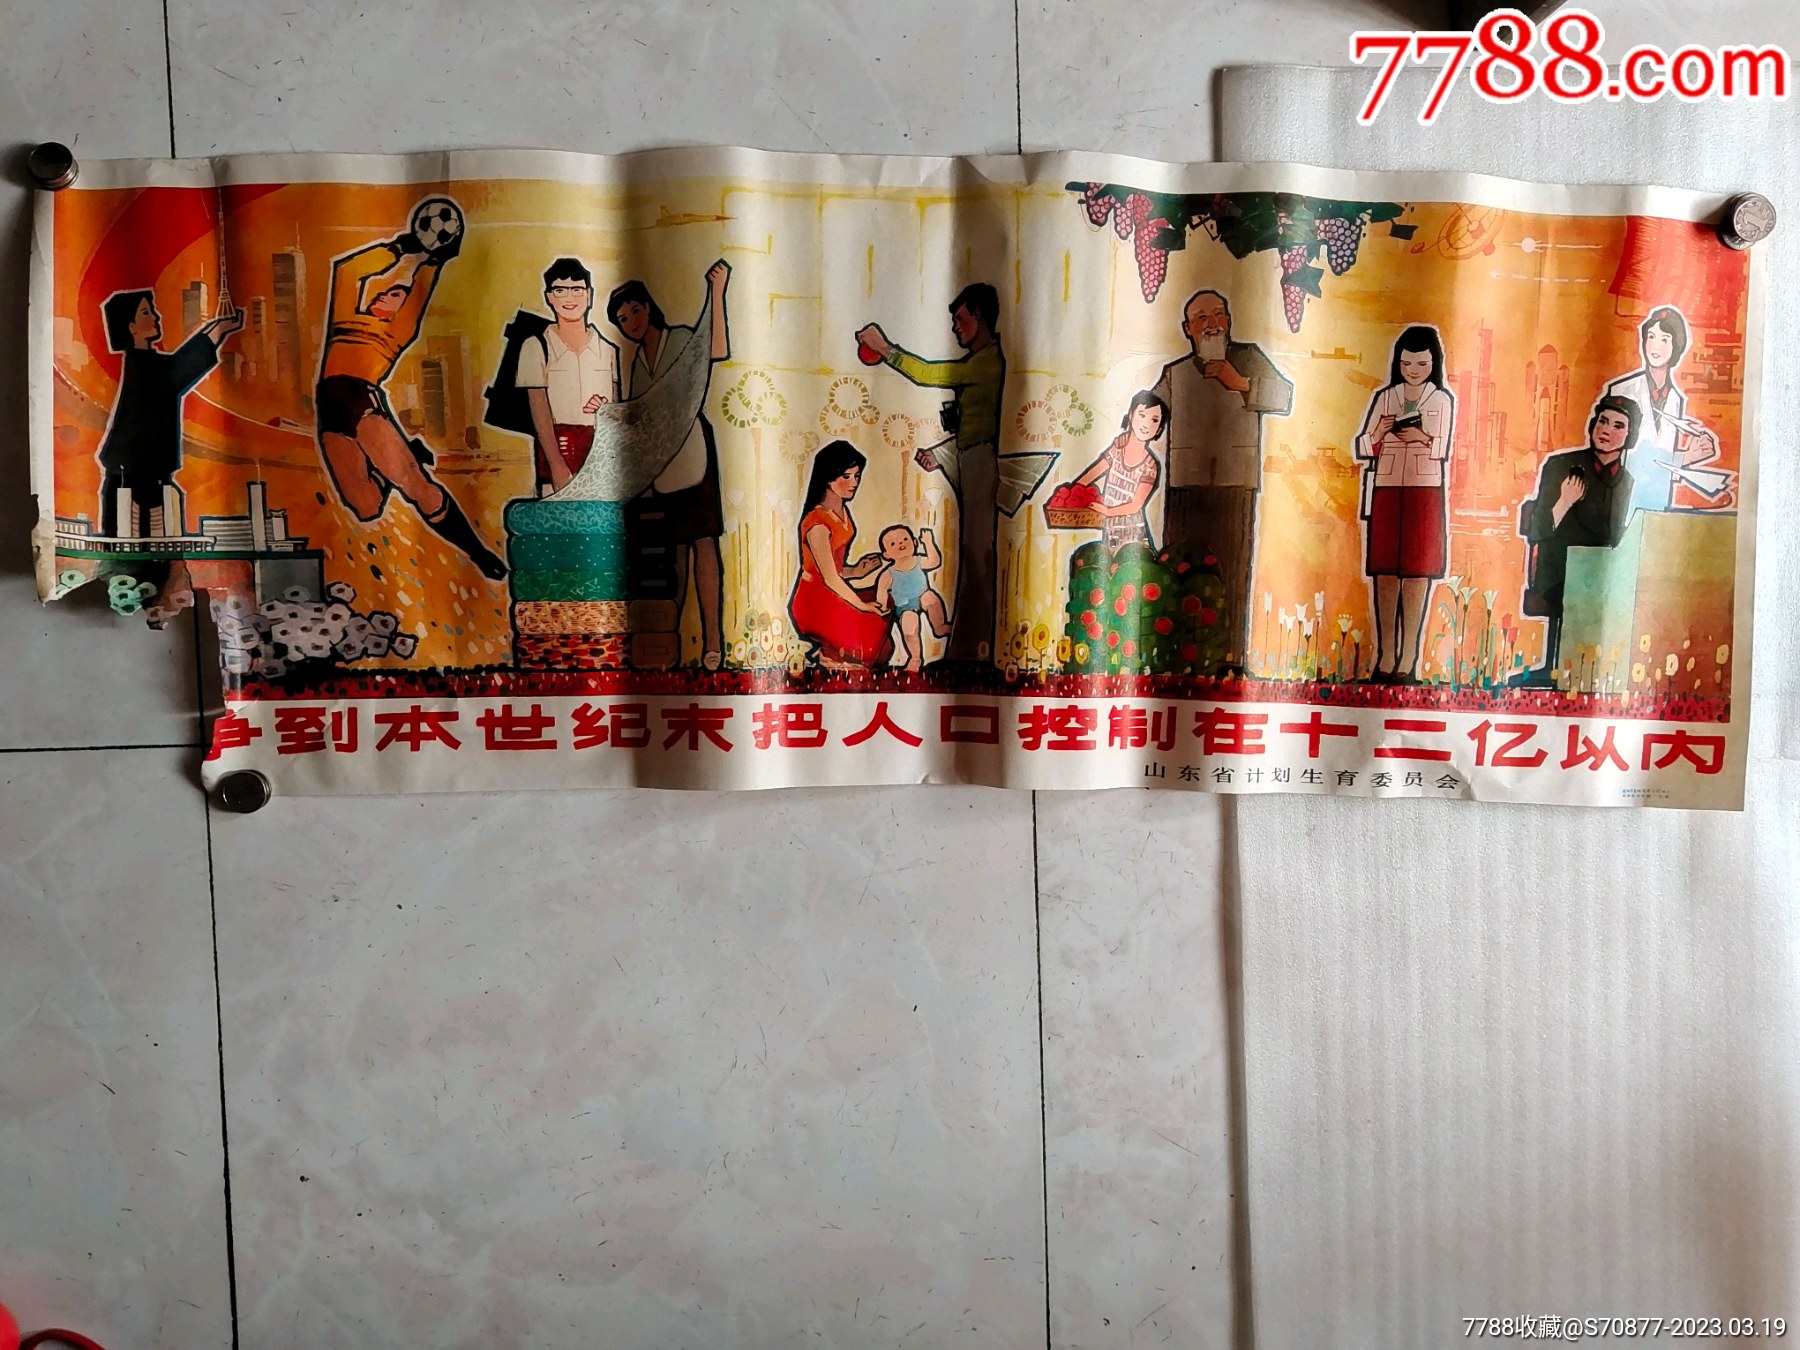 制服的亚裔中国交付人谈话在手机 库存照片. 图片 包括有 藏品, 移动, 纸盒, 愉快, 偶然, 男人, 蓝色 - 84061944